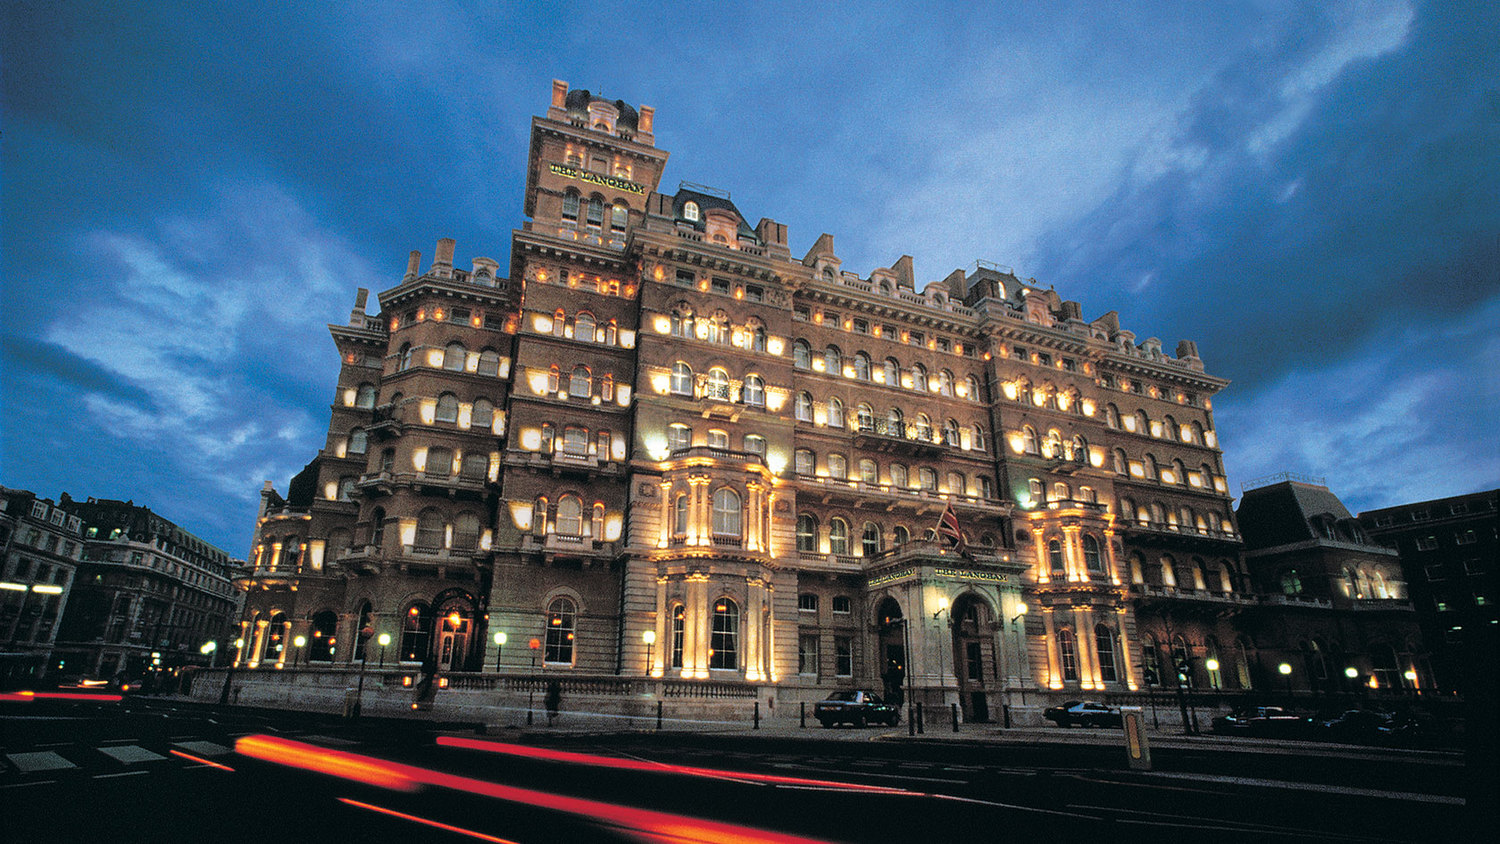 Hotel Spotlight: The Langham Hotel, London